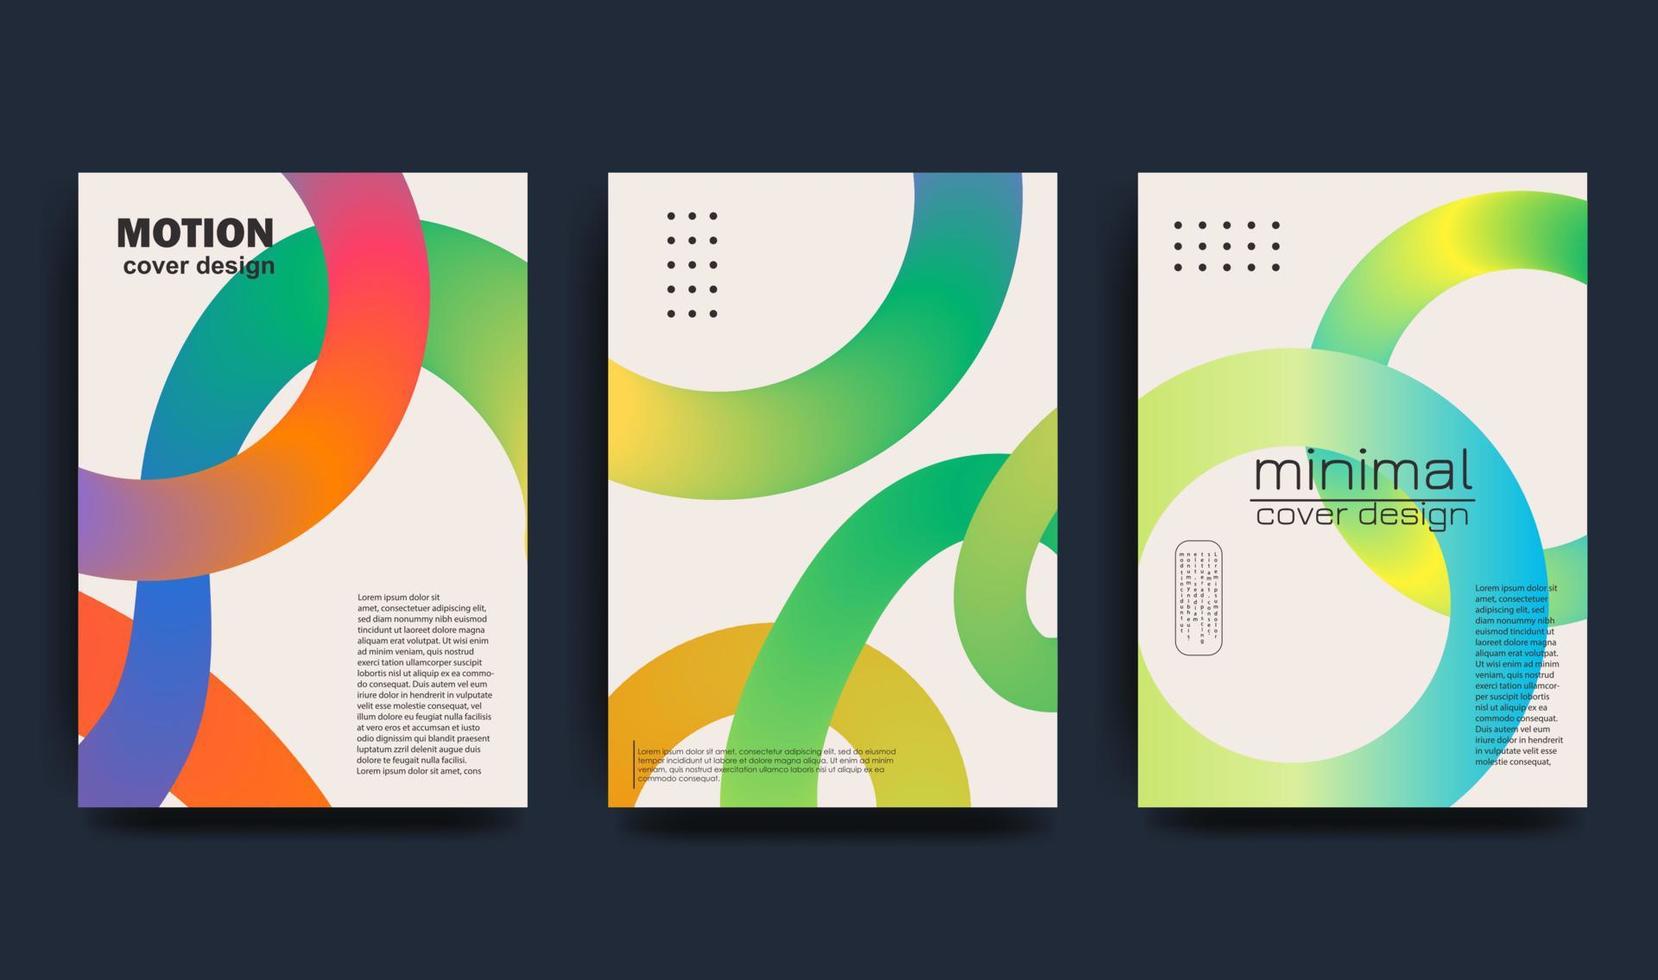 kreativ omslag i modern minimalistisk stil för företags- identitet, varumärke, social media reklam, kampanj. vågig form med regnbåge färger. vektor illustration